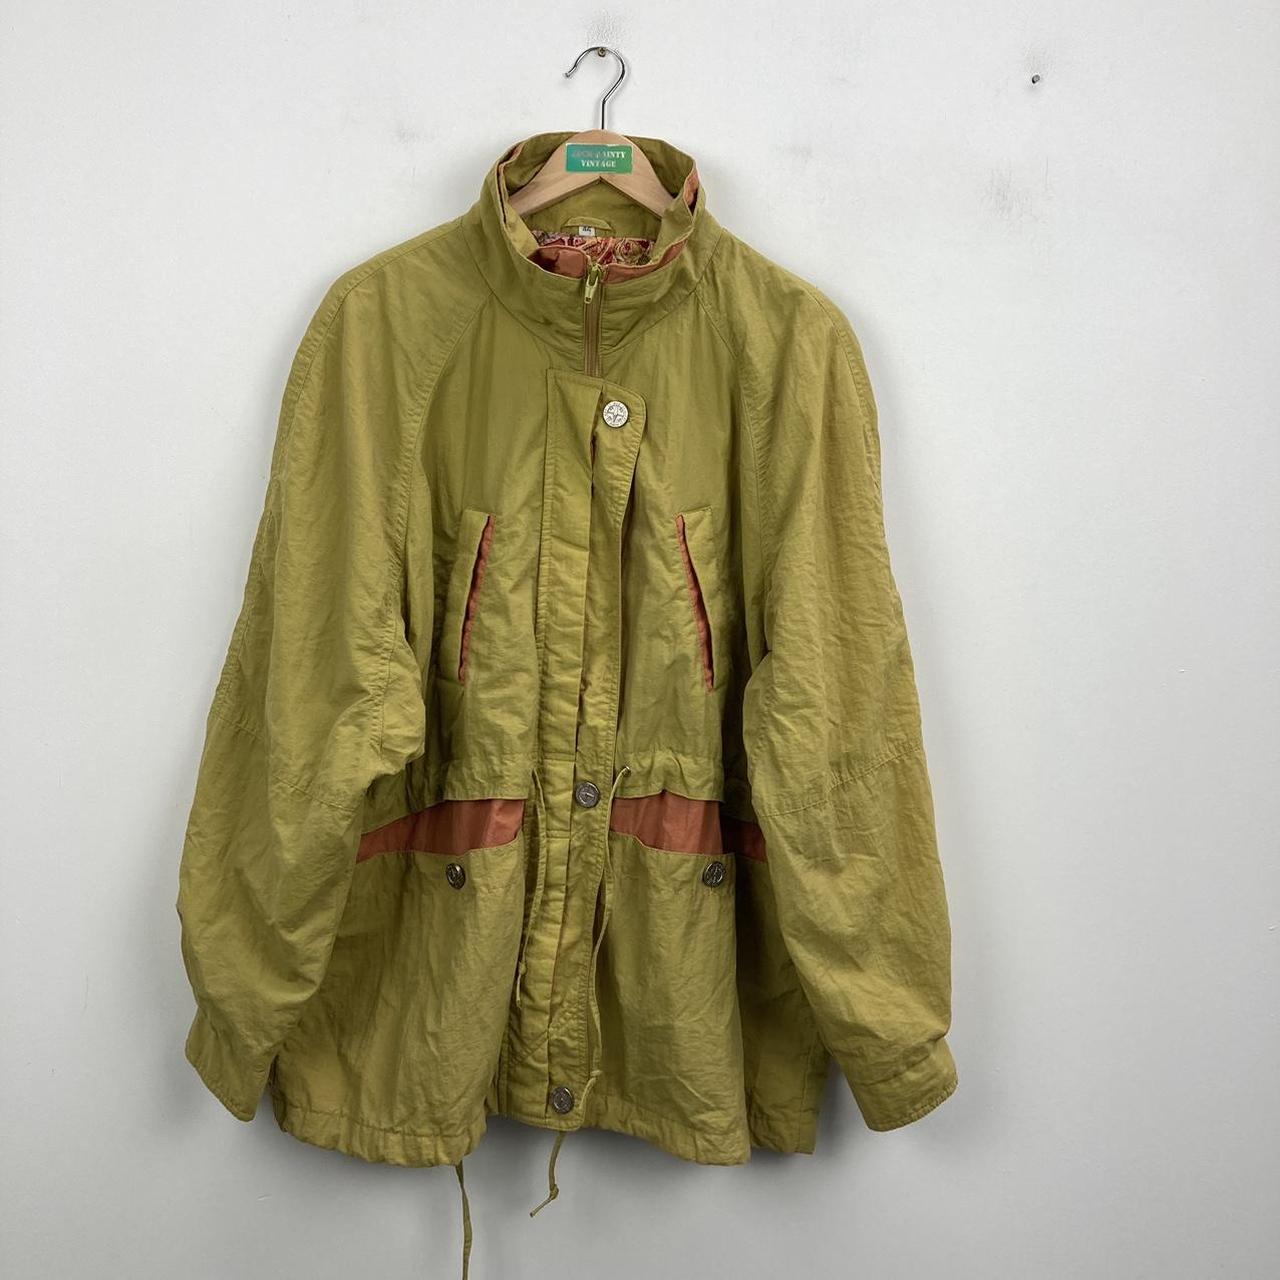 Vintage 90s mustard yellow coat/jacket No offers... - Depop